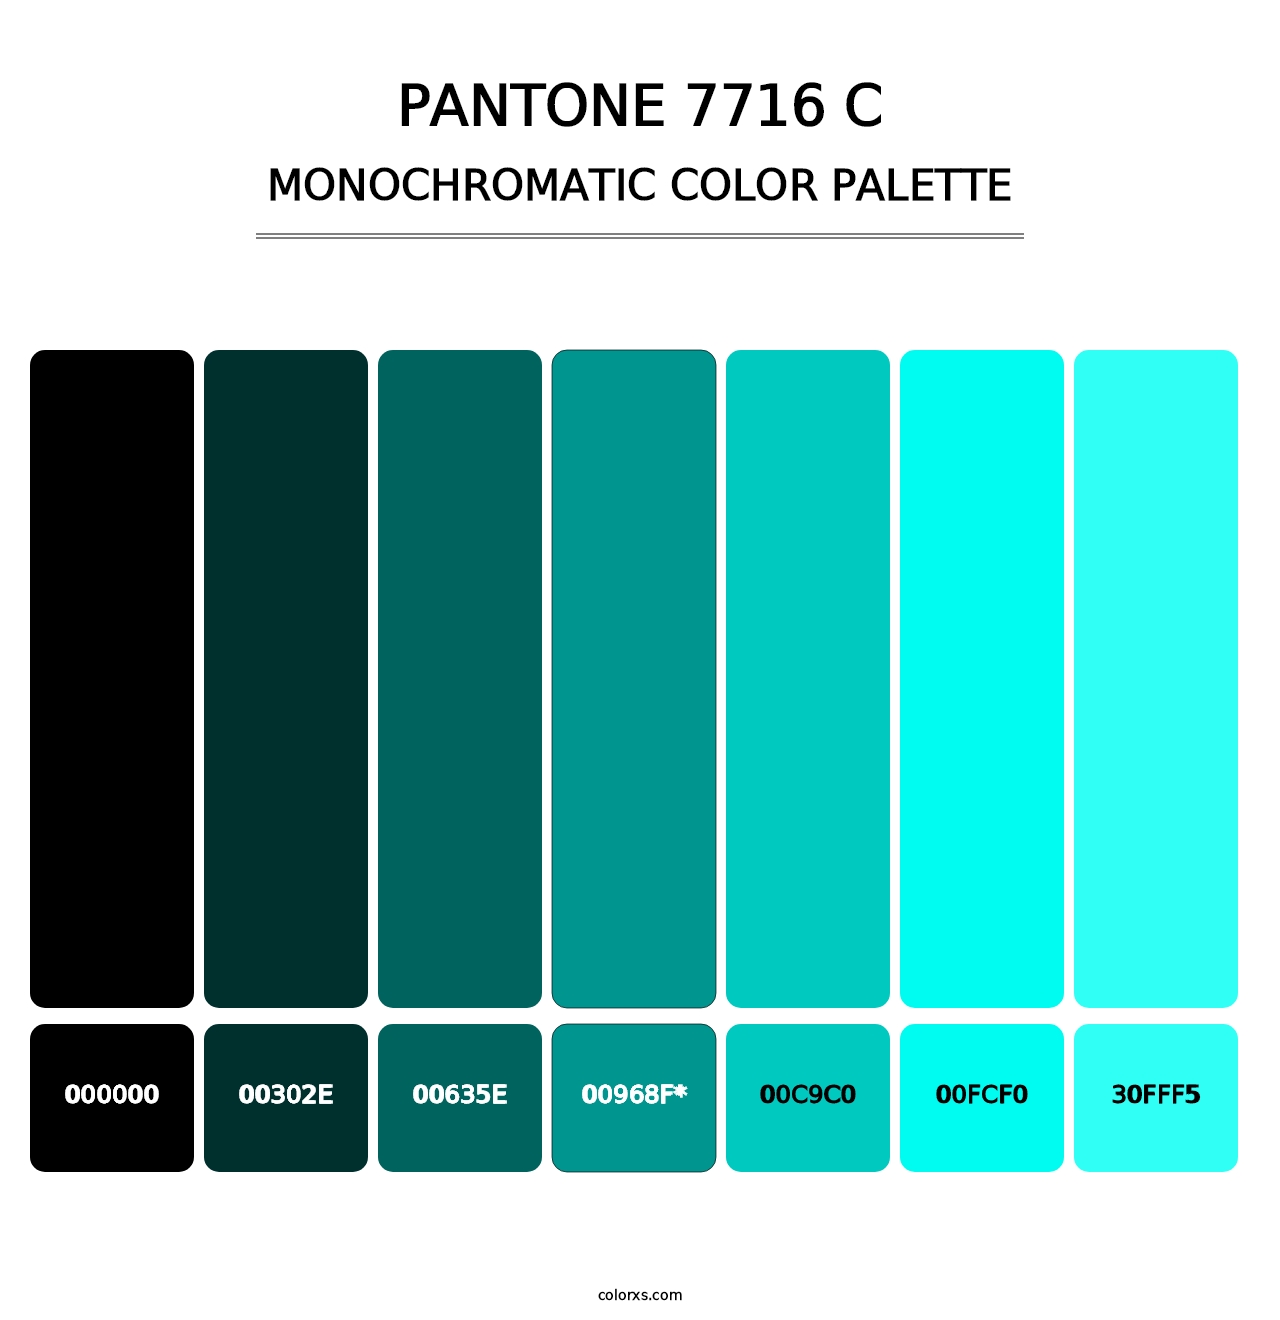 PANTONE 7716 C - Monochromatic Color Palette